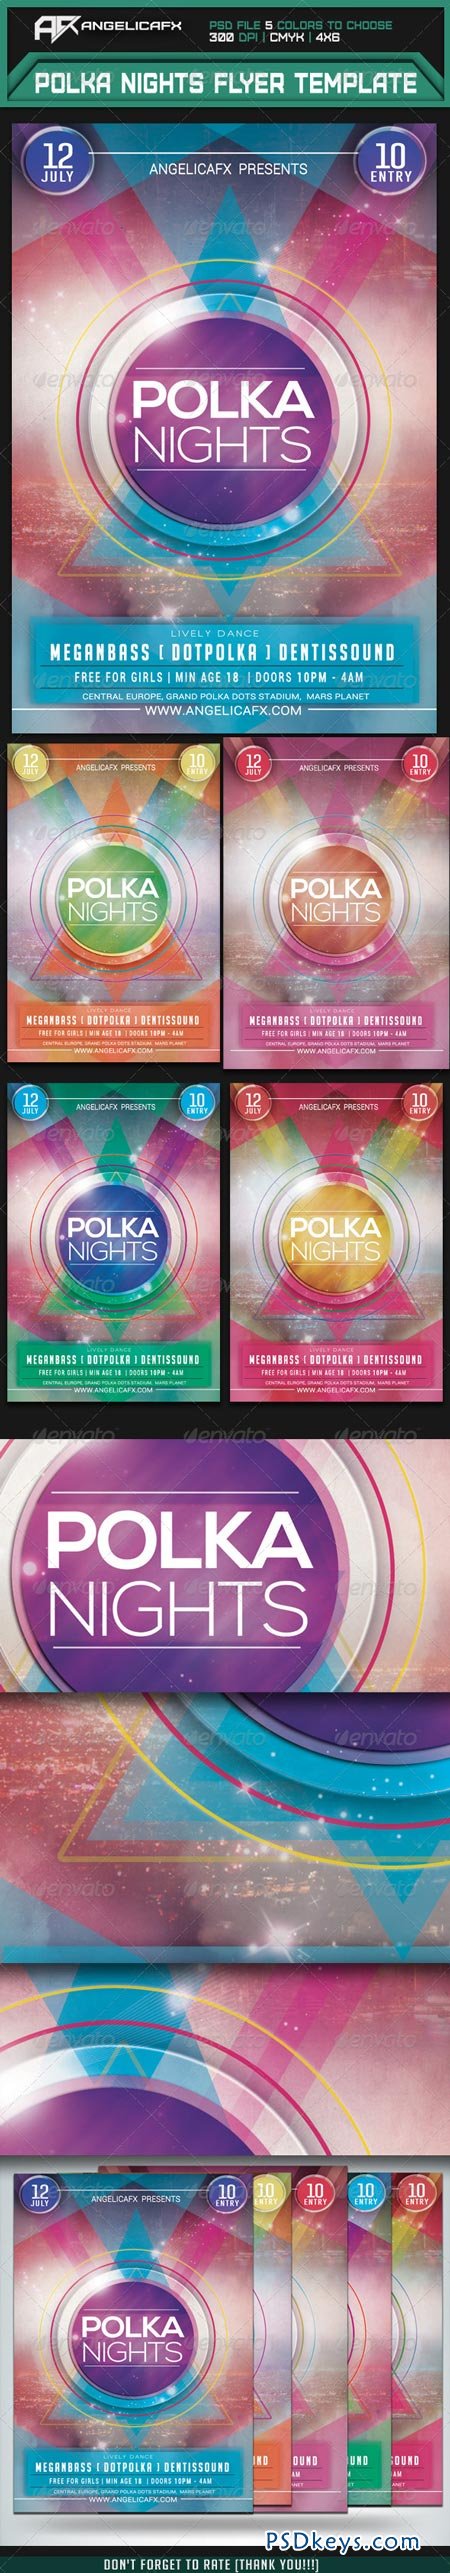 Polka Nights Flyer Template 7333965